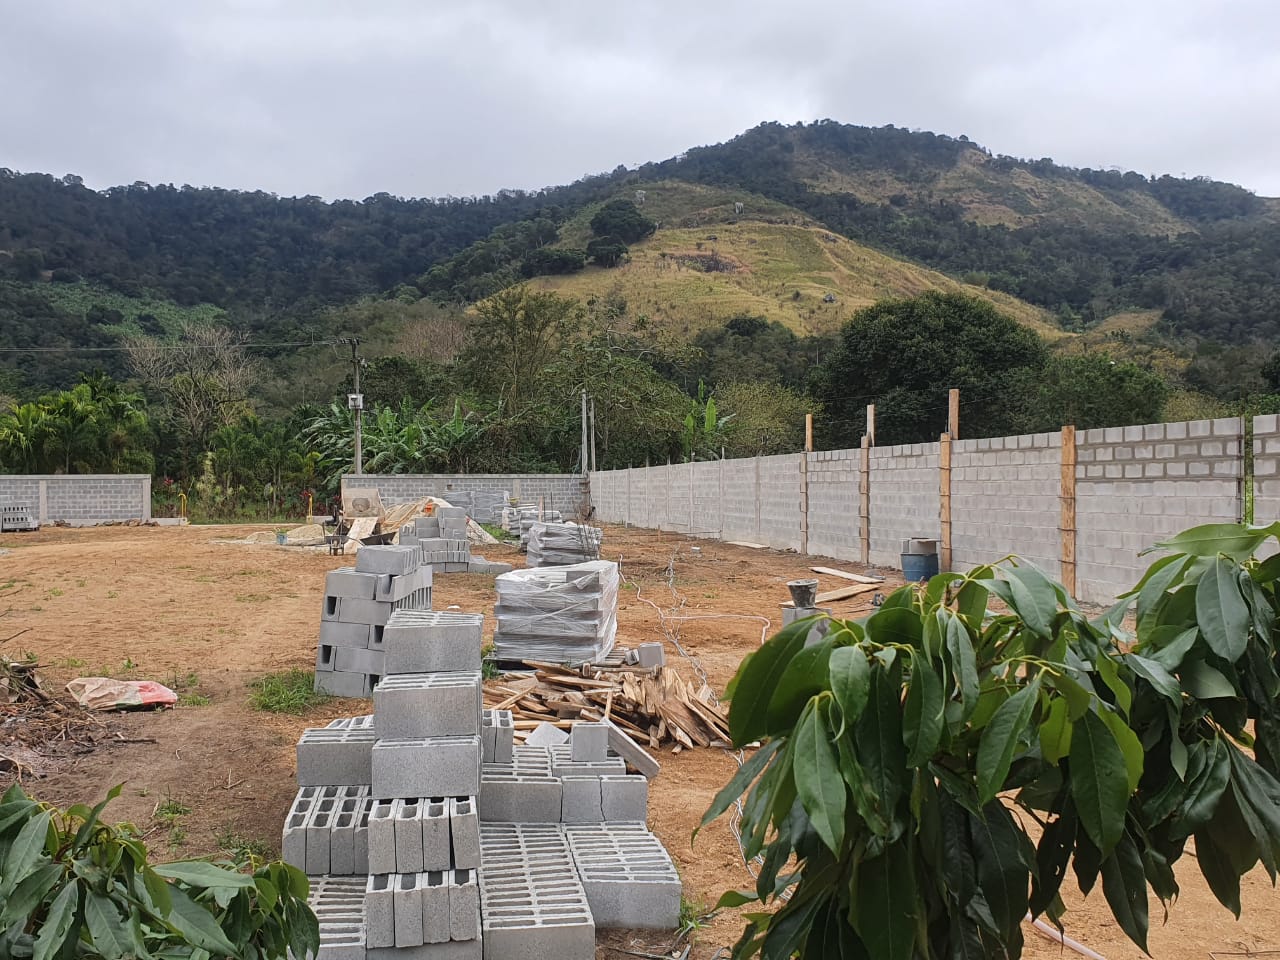 Parcelamento do solo e construção irregular são flagrados em Guaratiba após denúncia